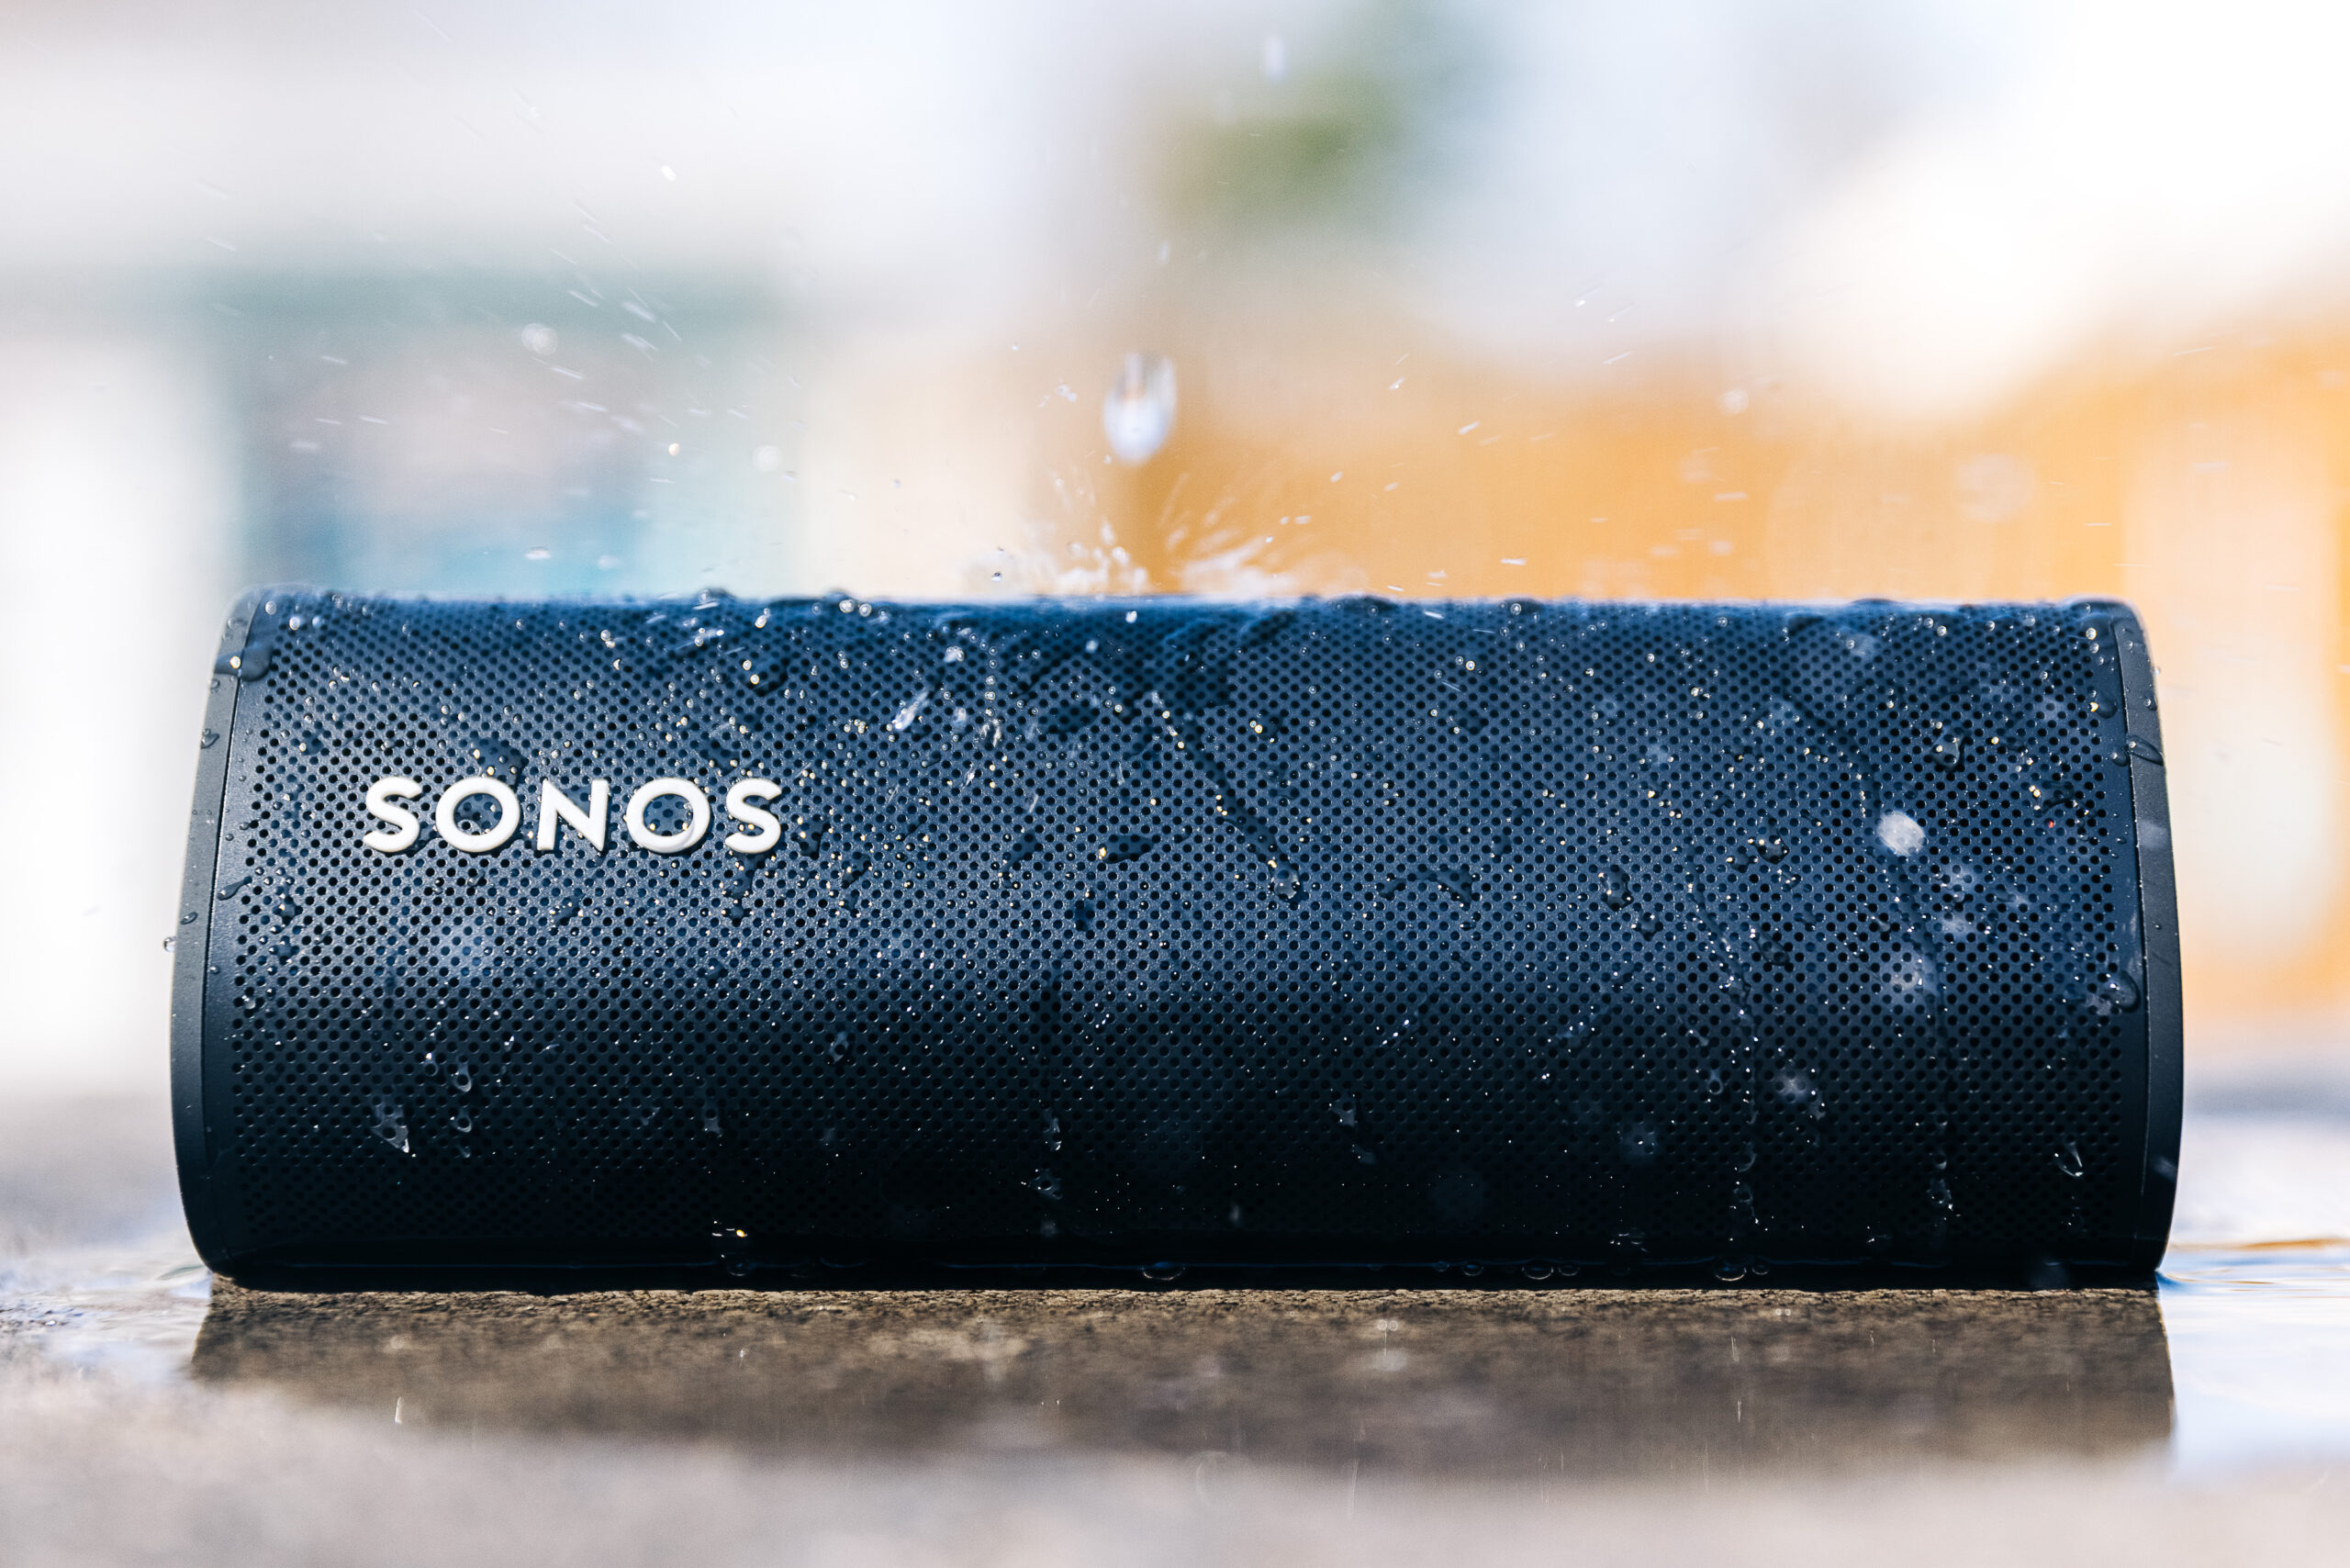 Sonos roam speaker with water falling on it